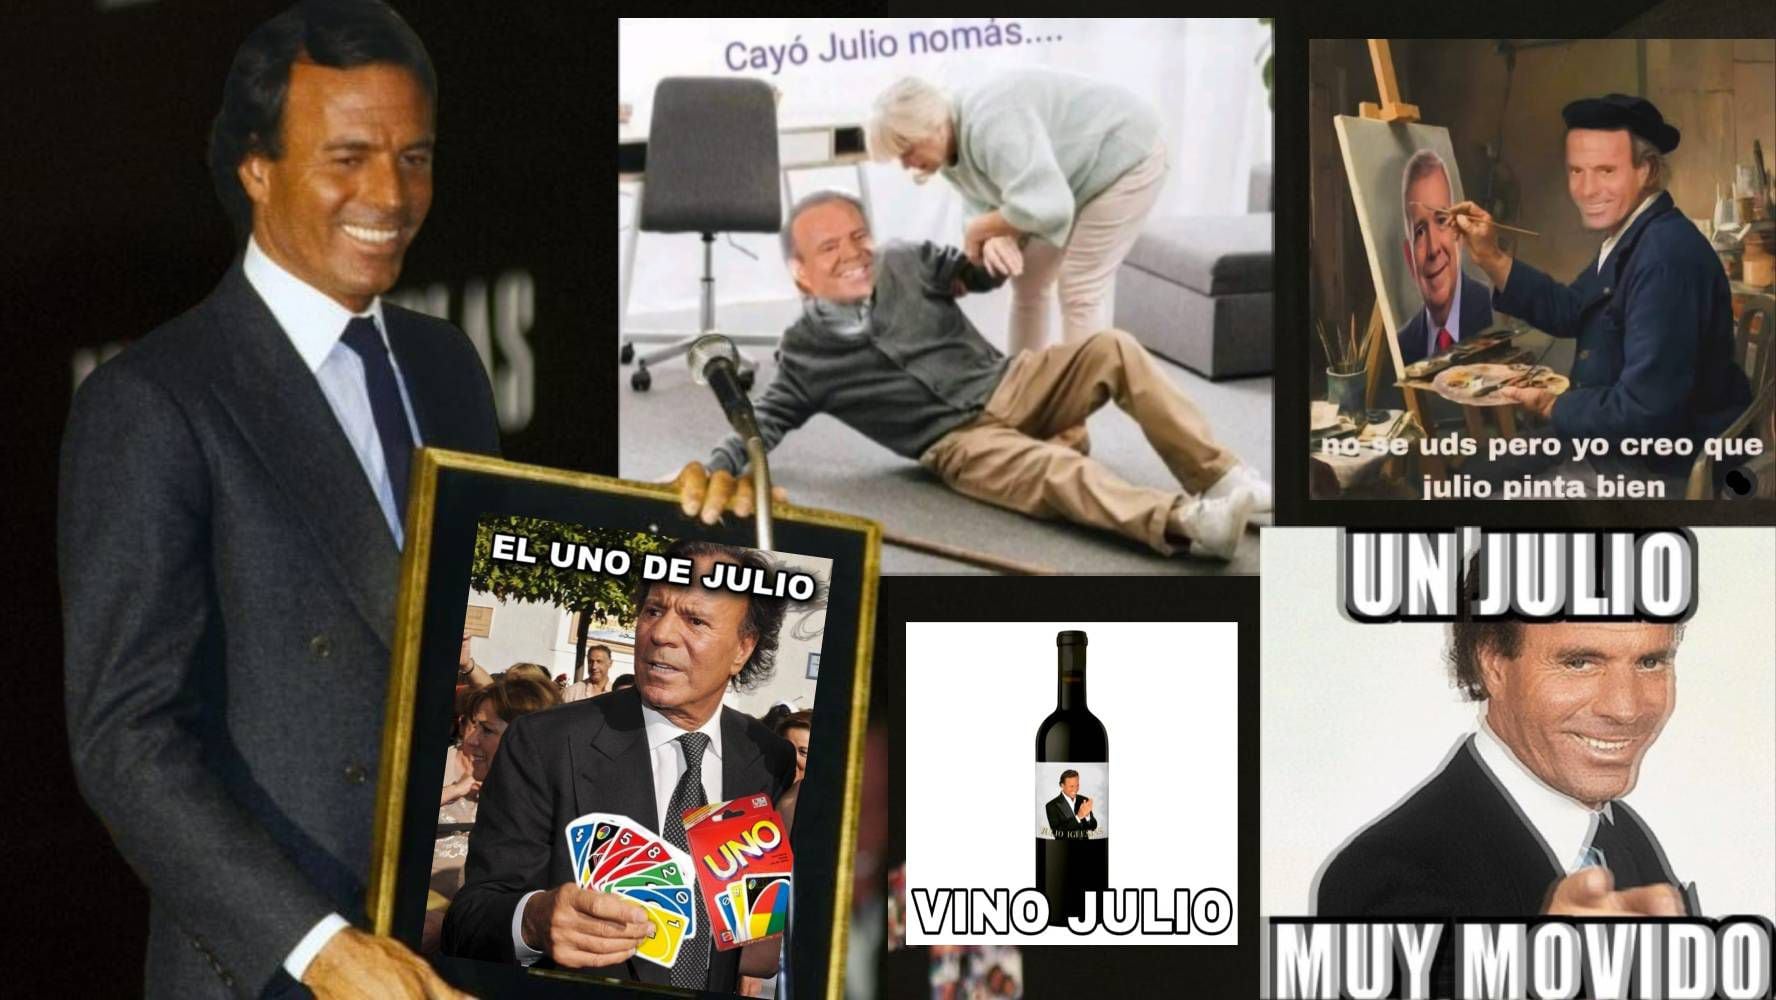 ‘Cayó julio y con mucha agua’: Los mejores memes del mes con Julio Iglesias y lo que él opina de ellos